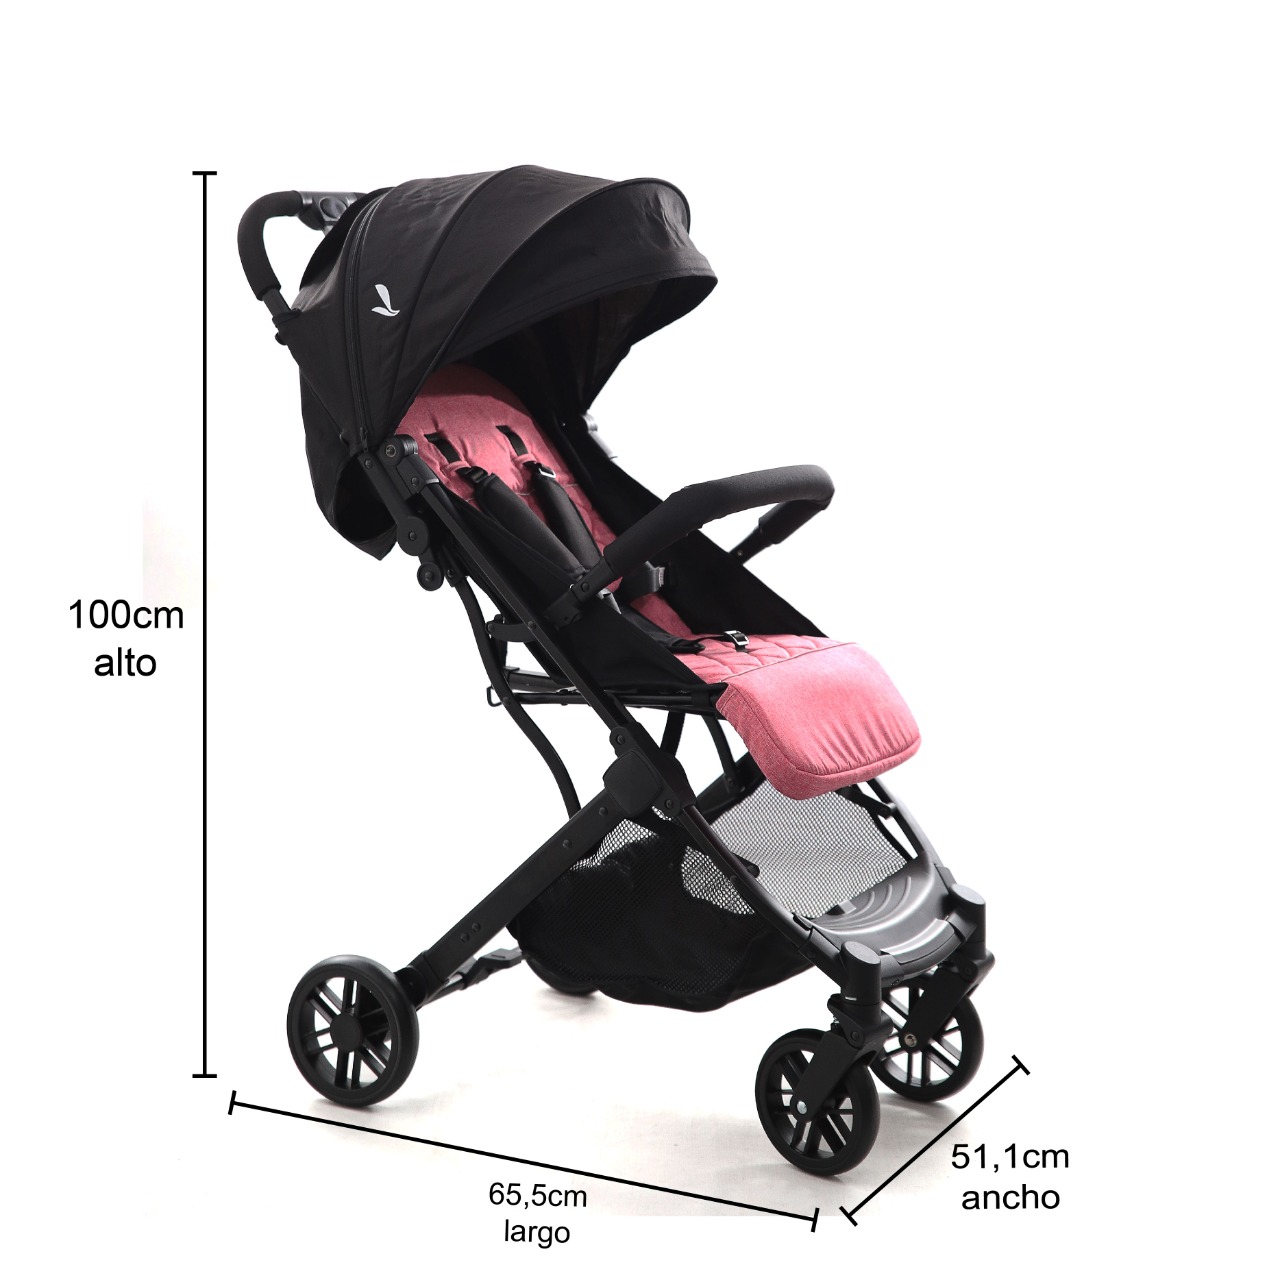 Coche para bebé 4 ruedas con porta bebe negro/rosado Spectrum